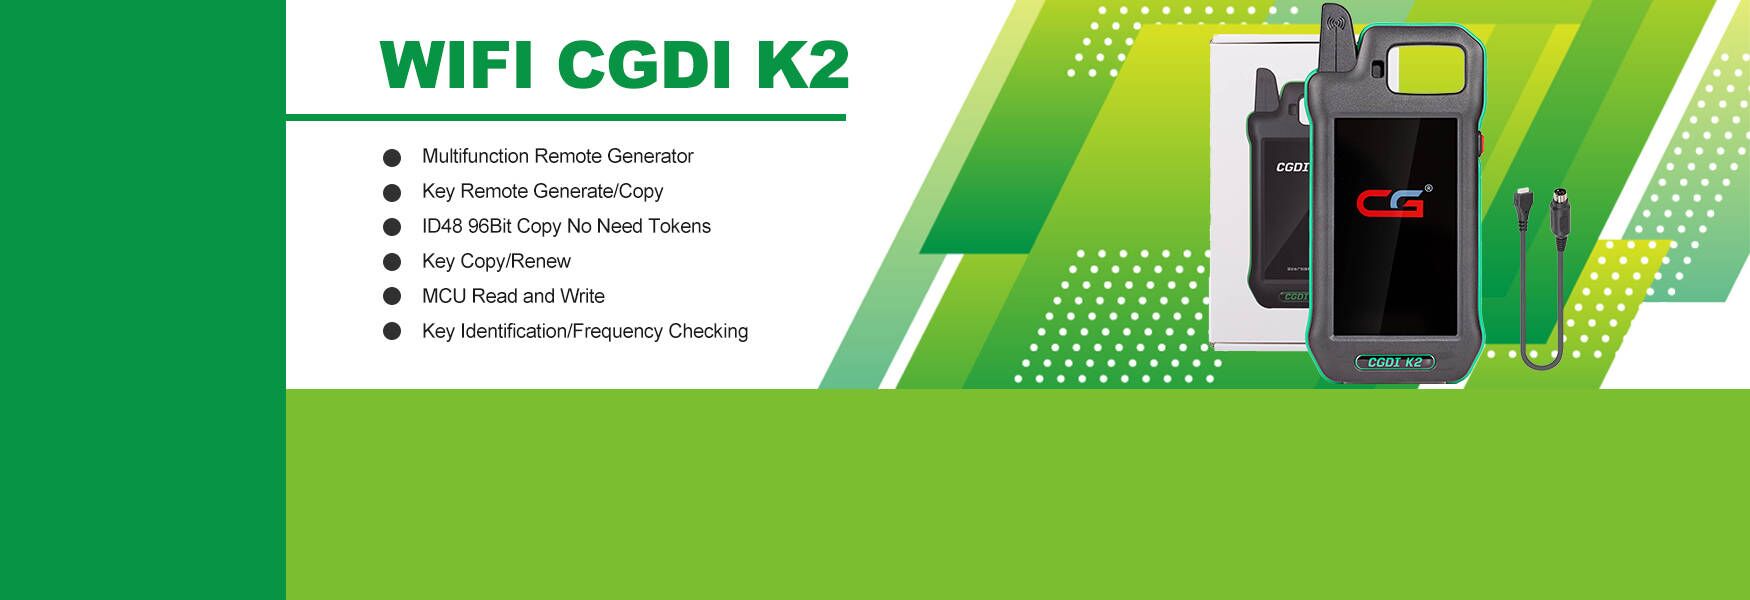 CGDI K2 Price